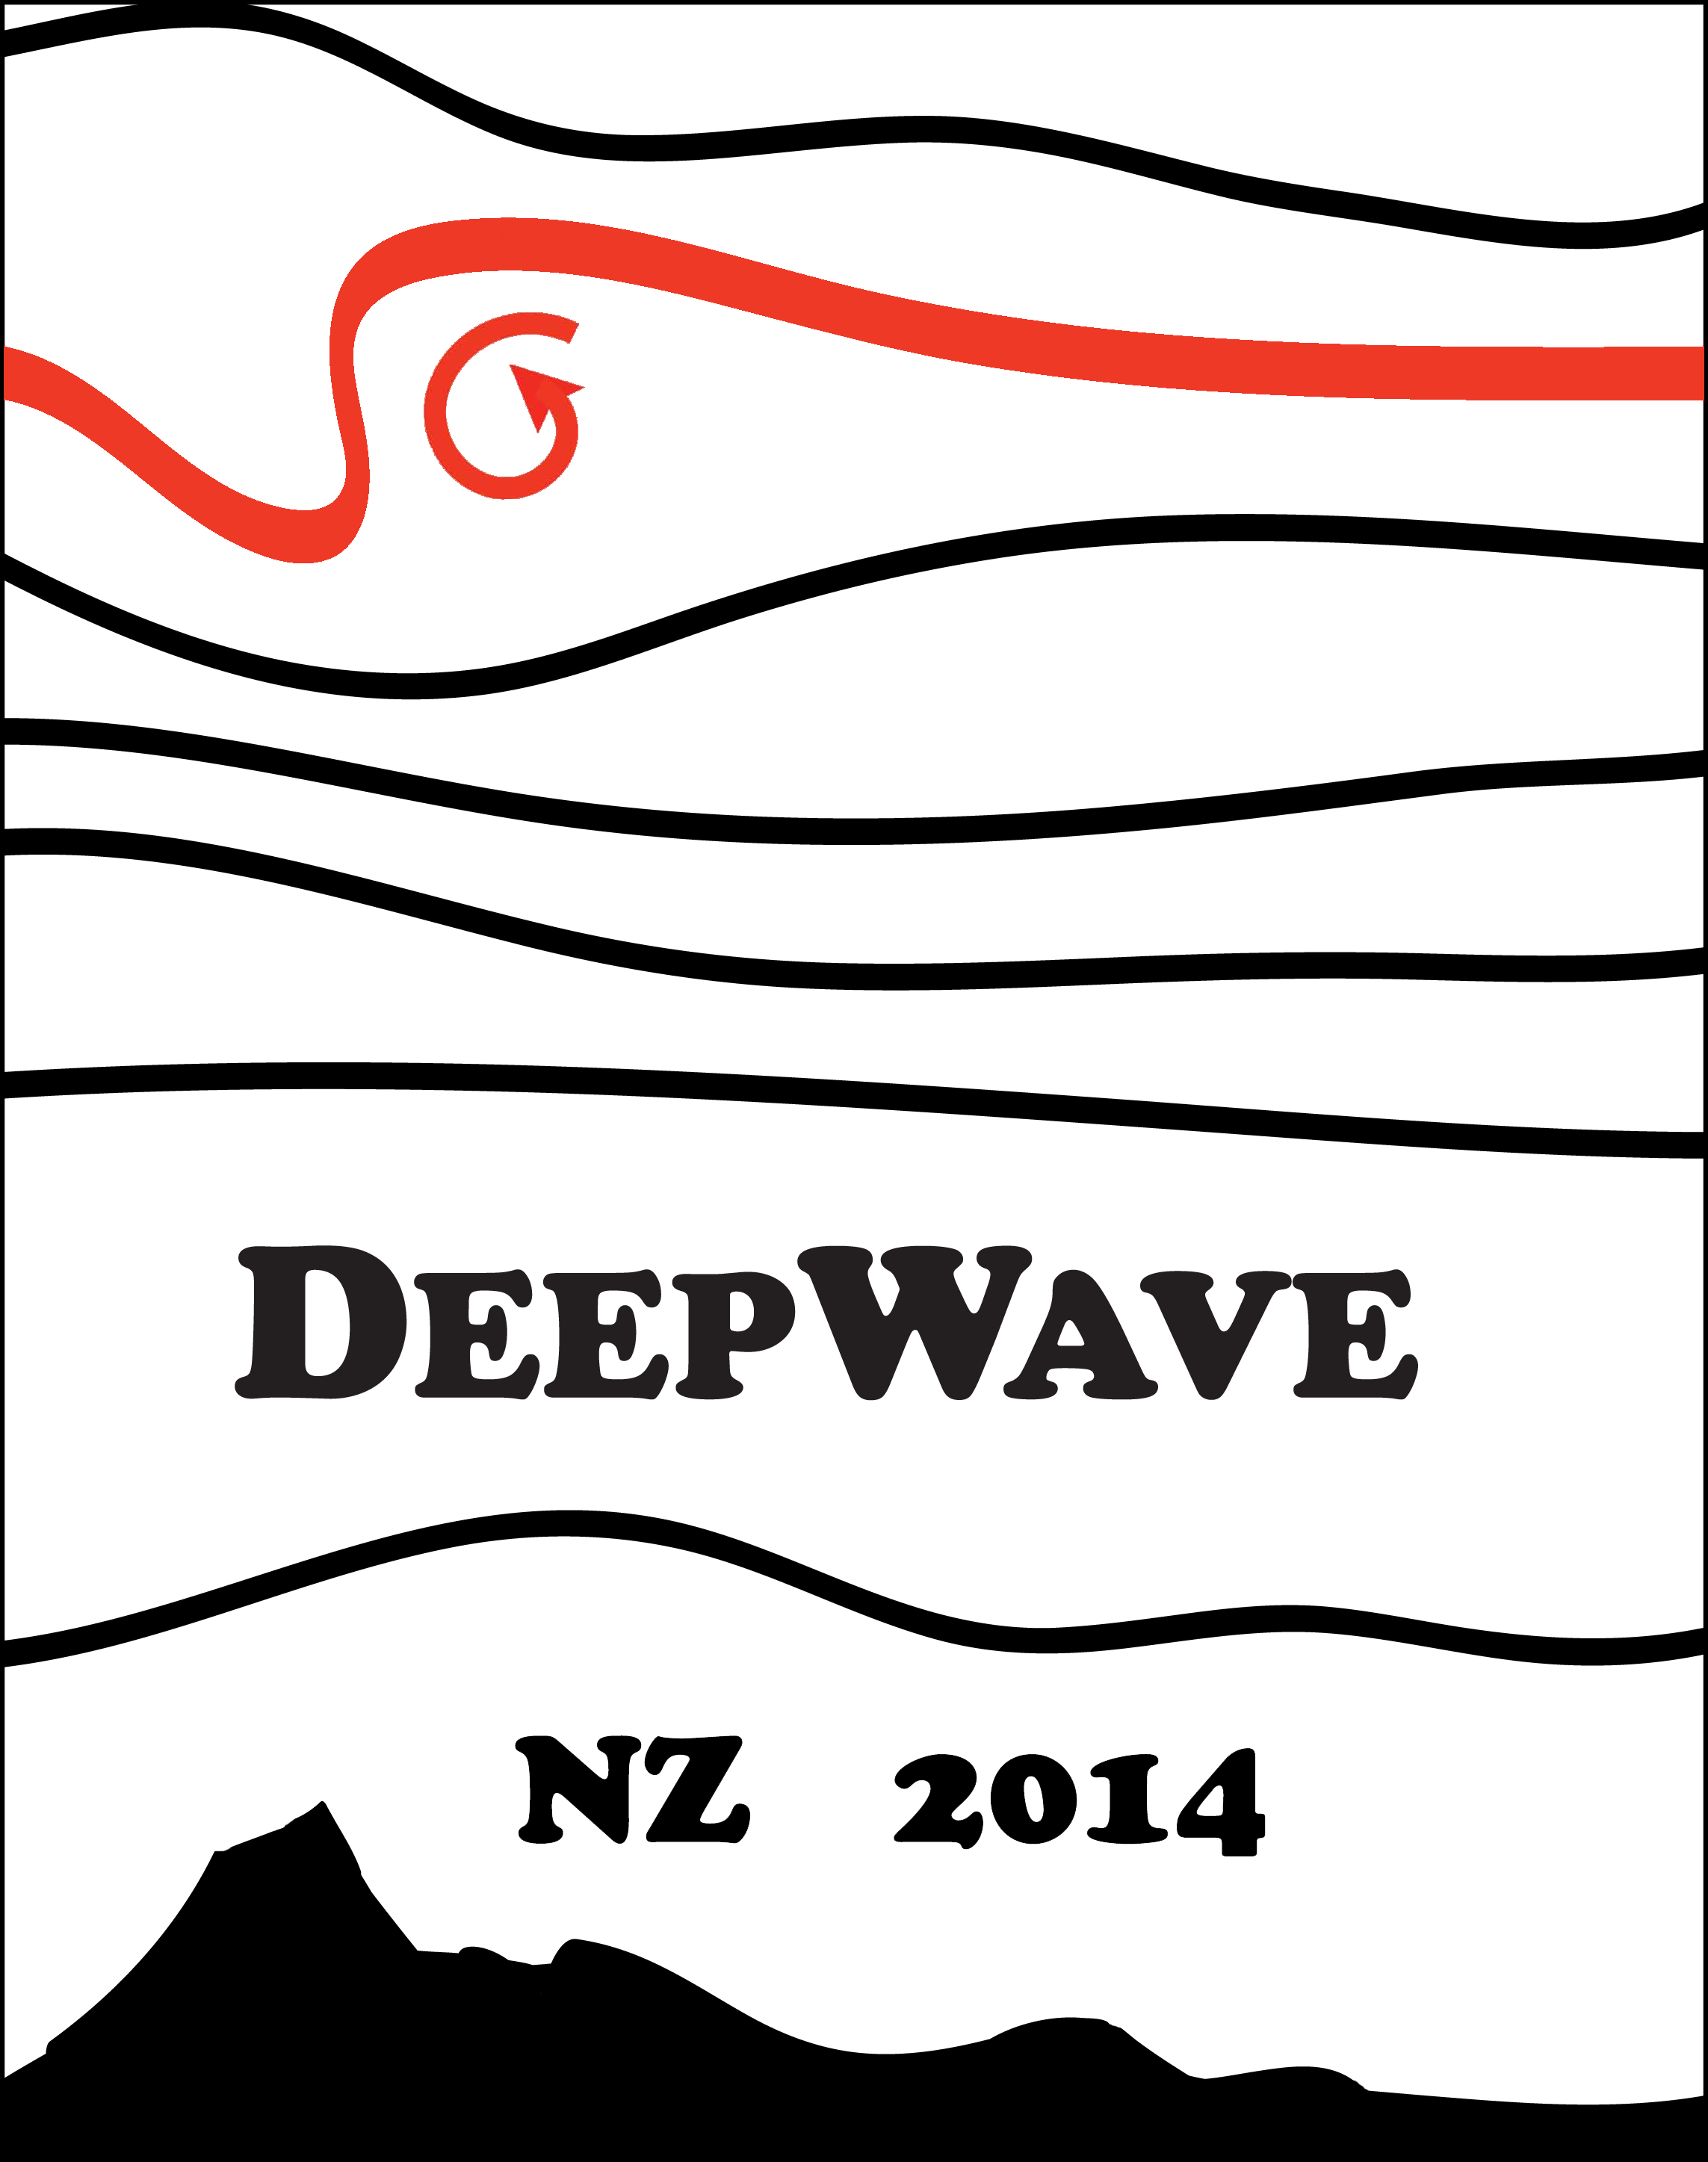 deepwave-logo-2014.png